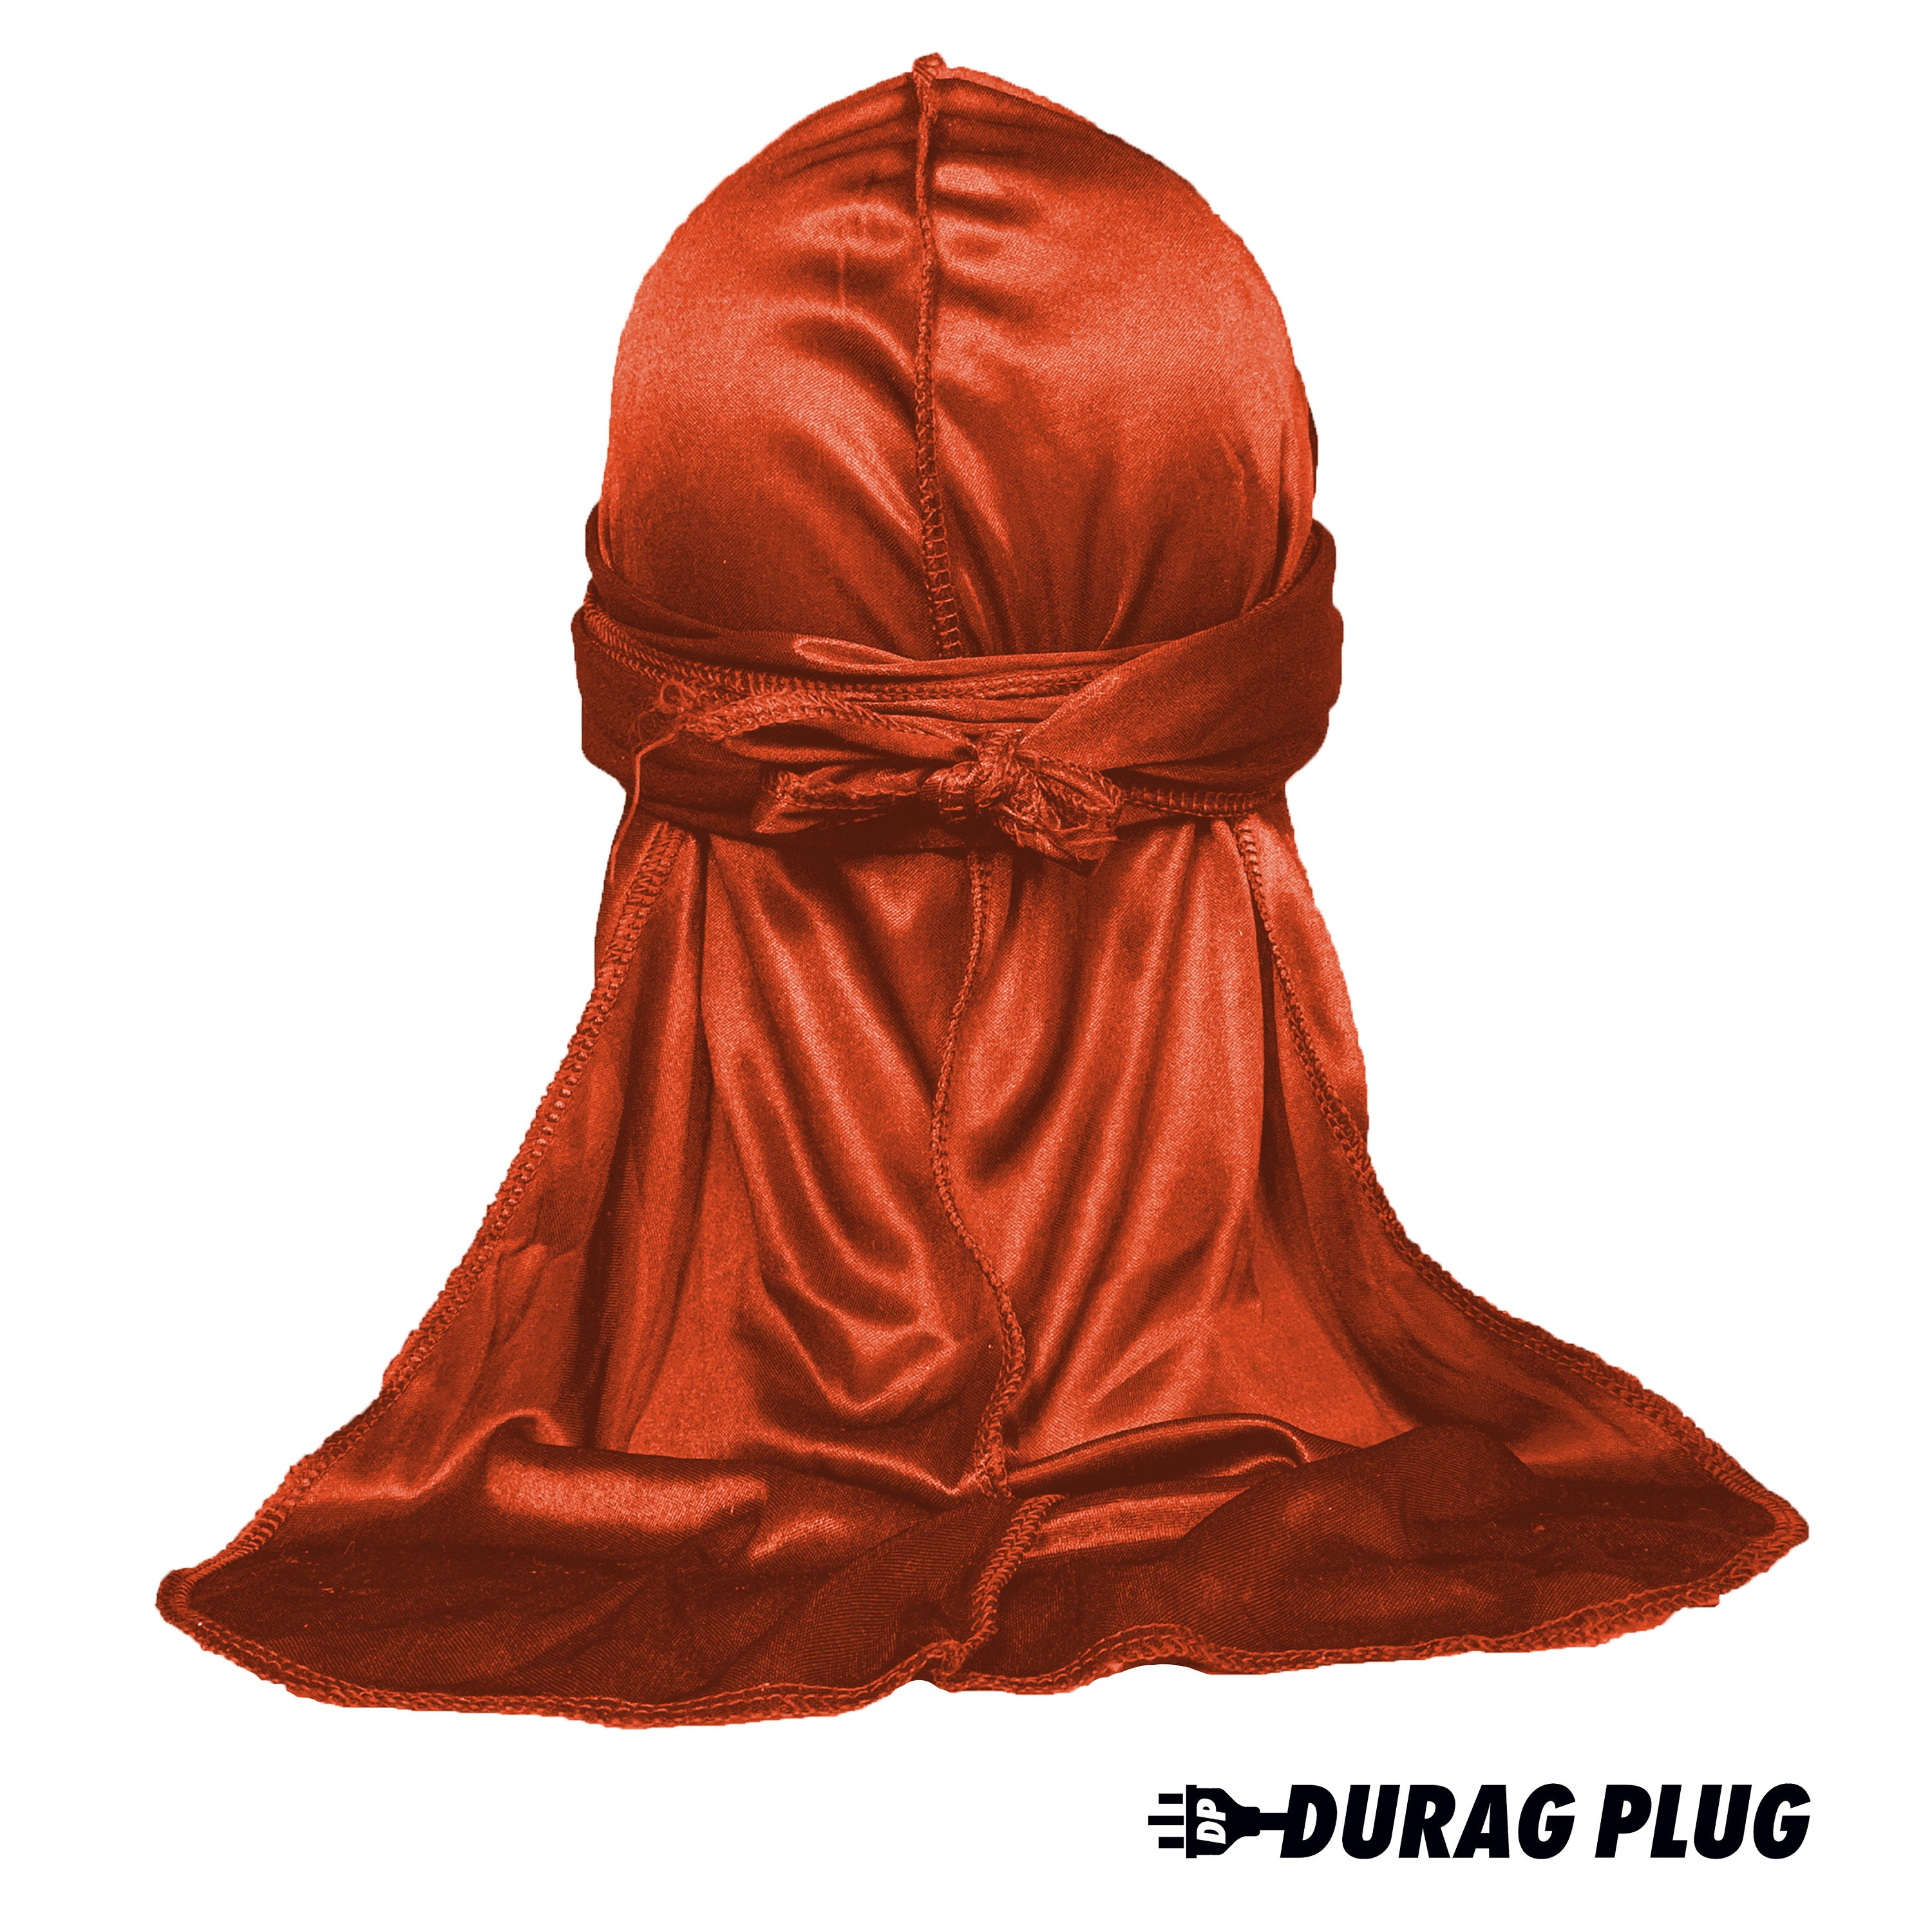 Red LV Bonnet/Durag Combo